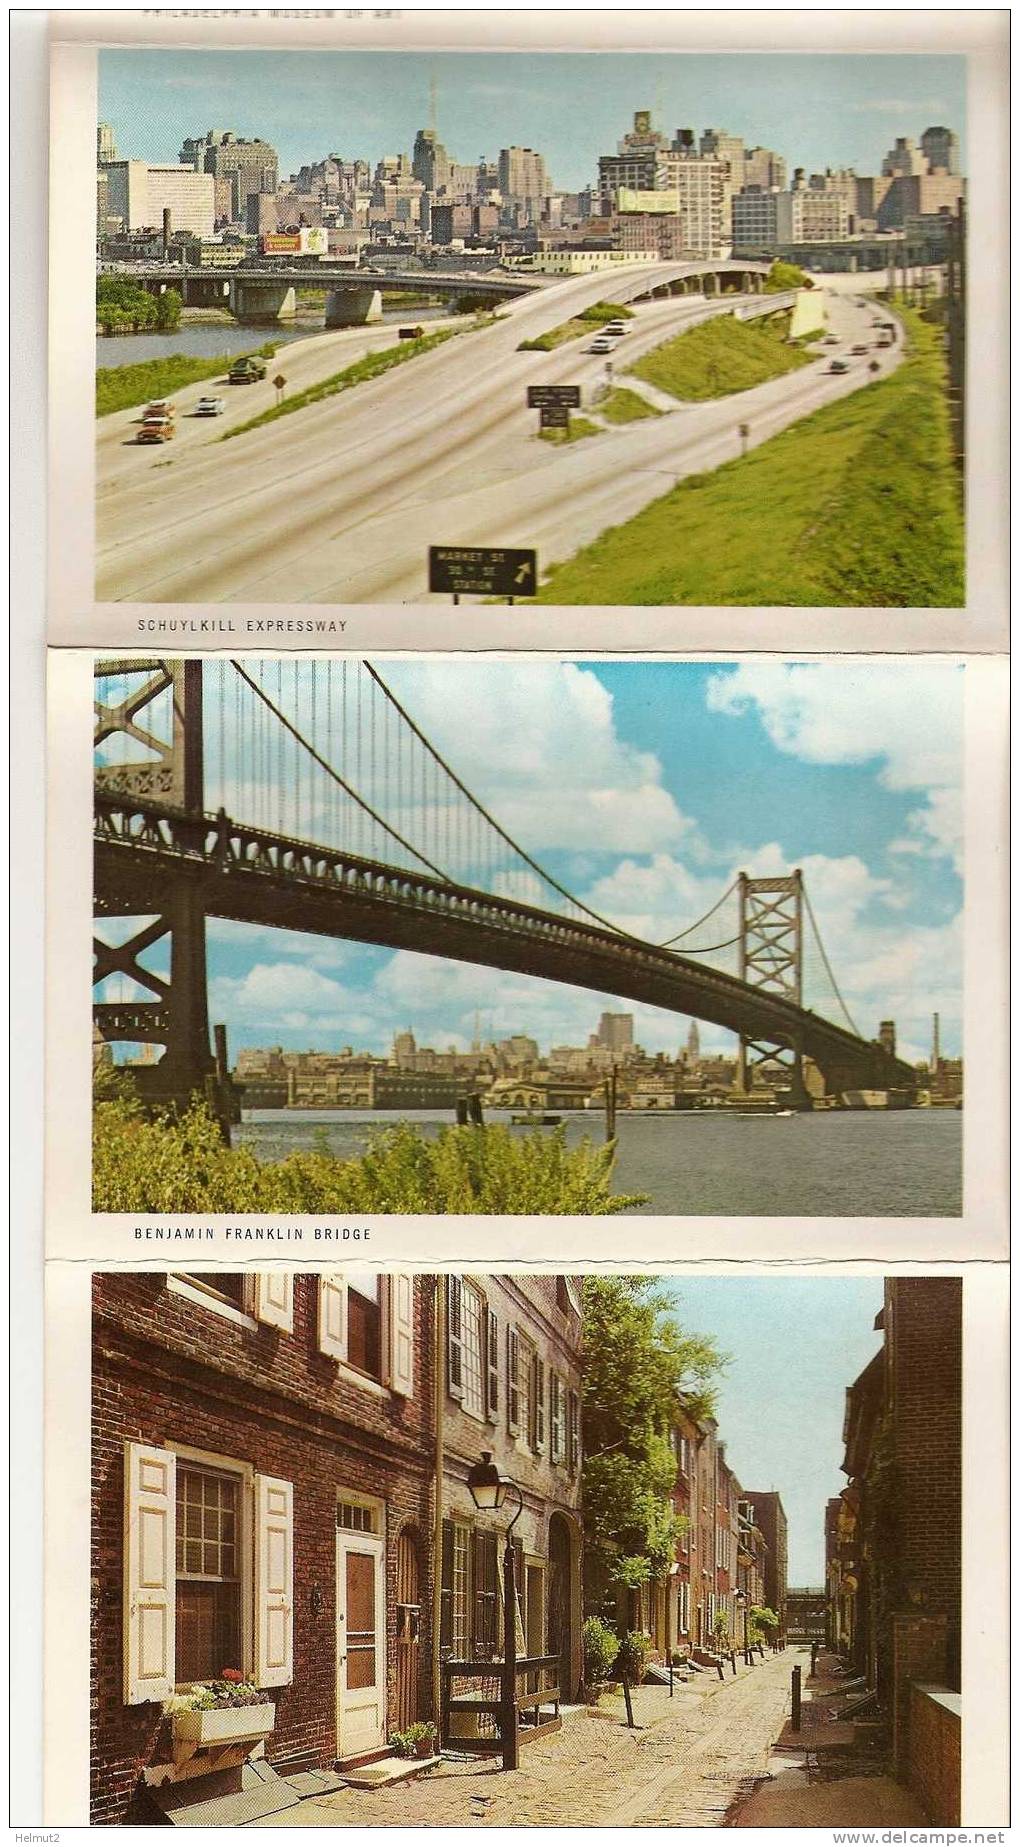 USA - Pennsylvanie Philadelphie - Dépliant multi cartes 12 vues, Souvenir Accordion Folder (voir descriptif) - MEA15